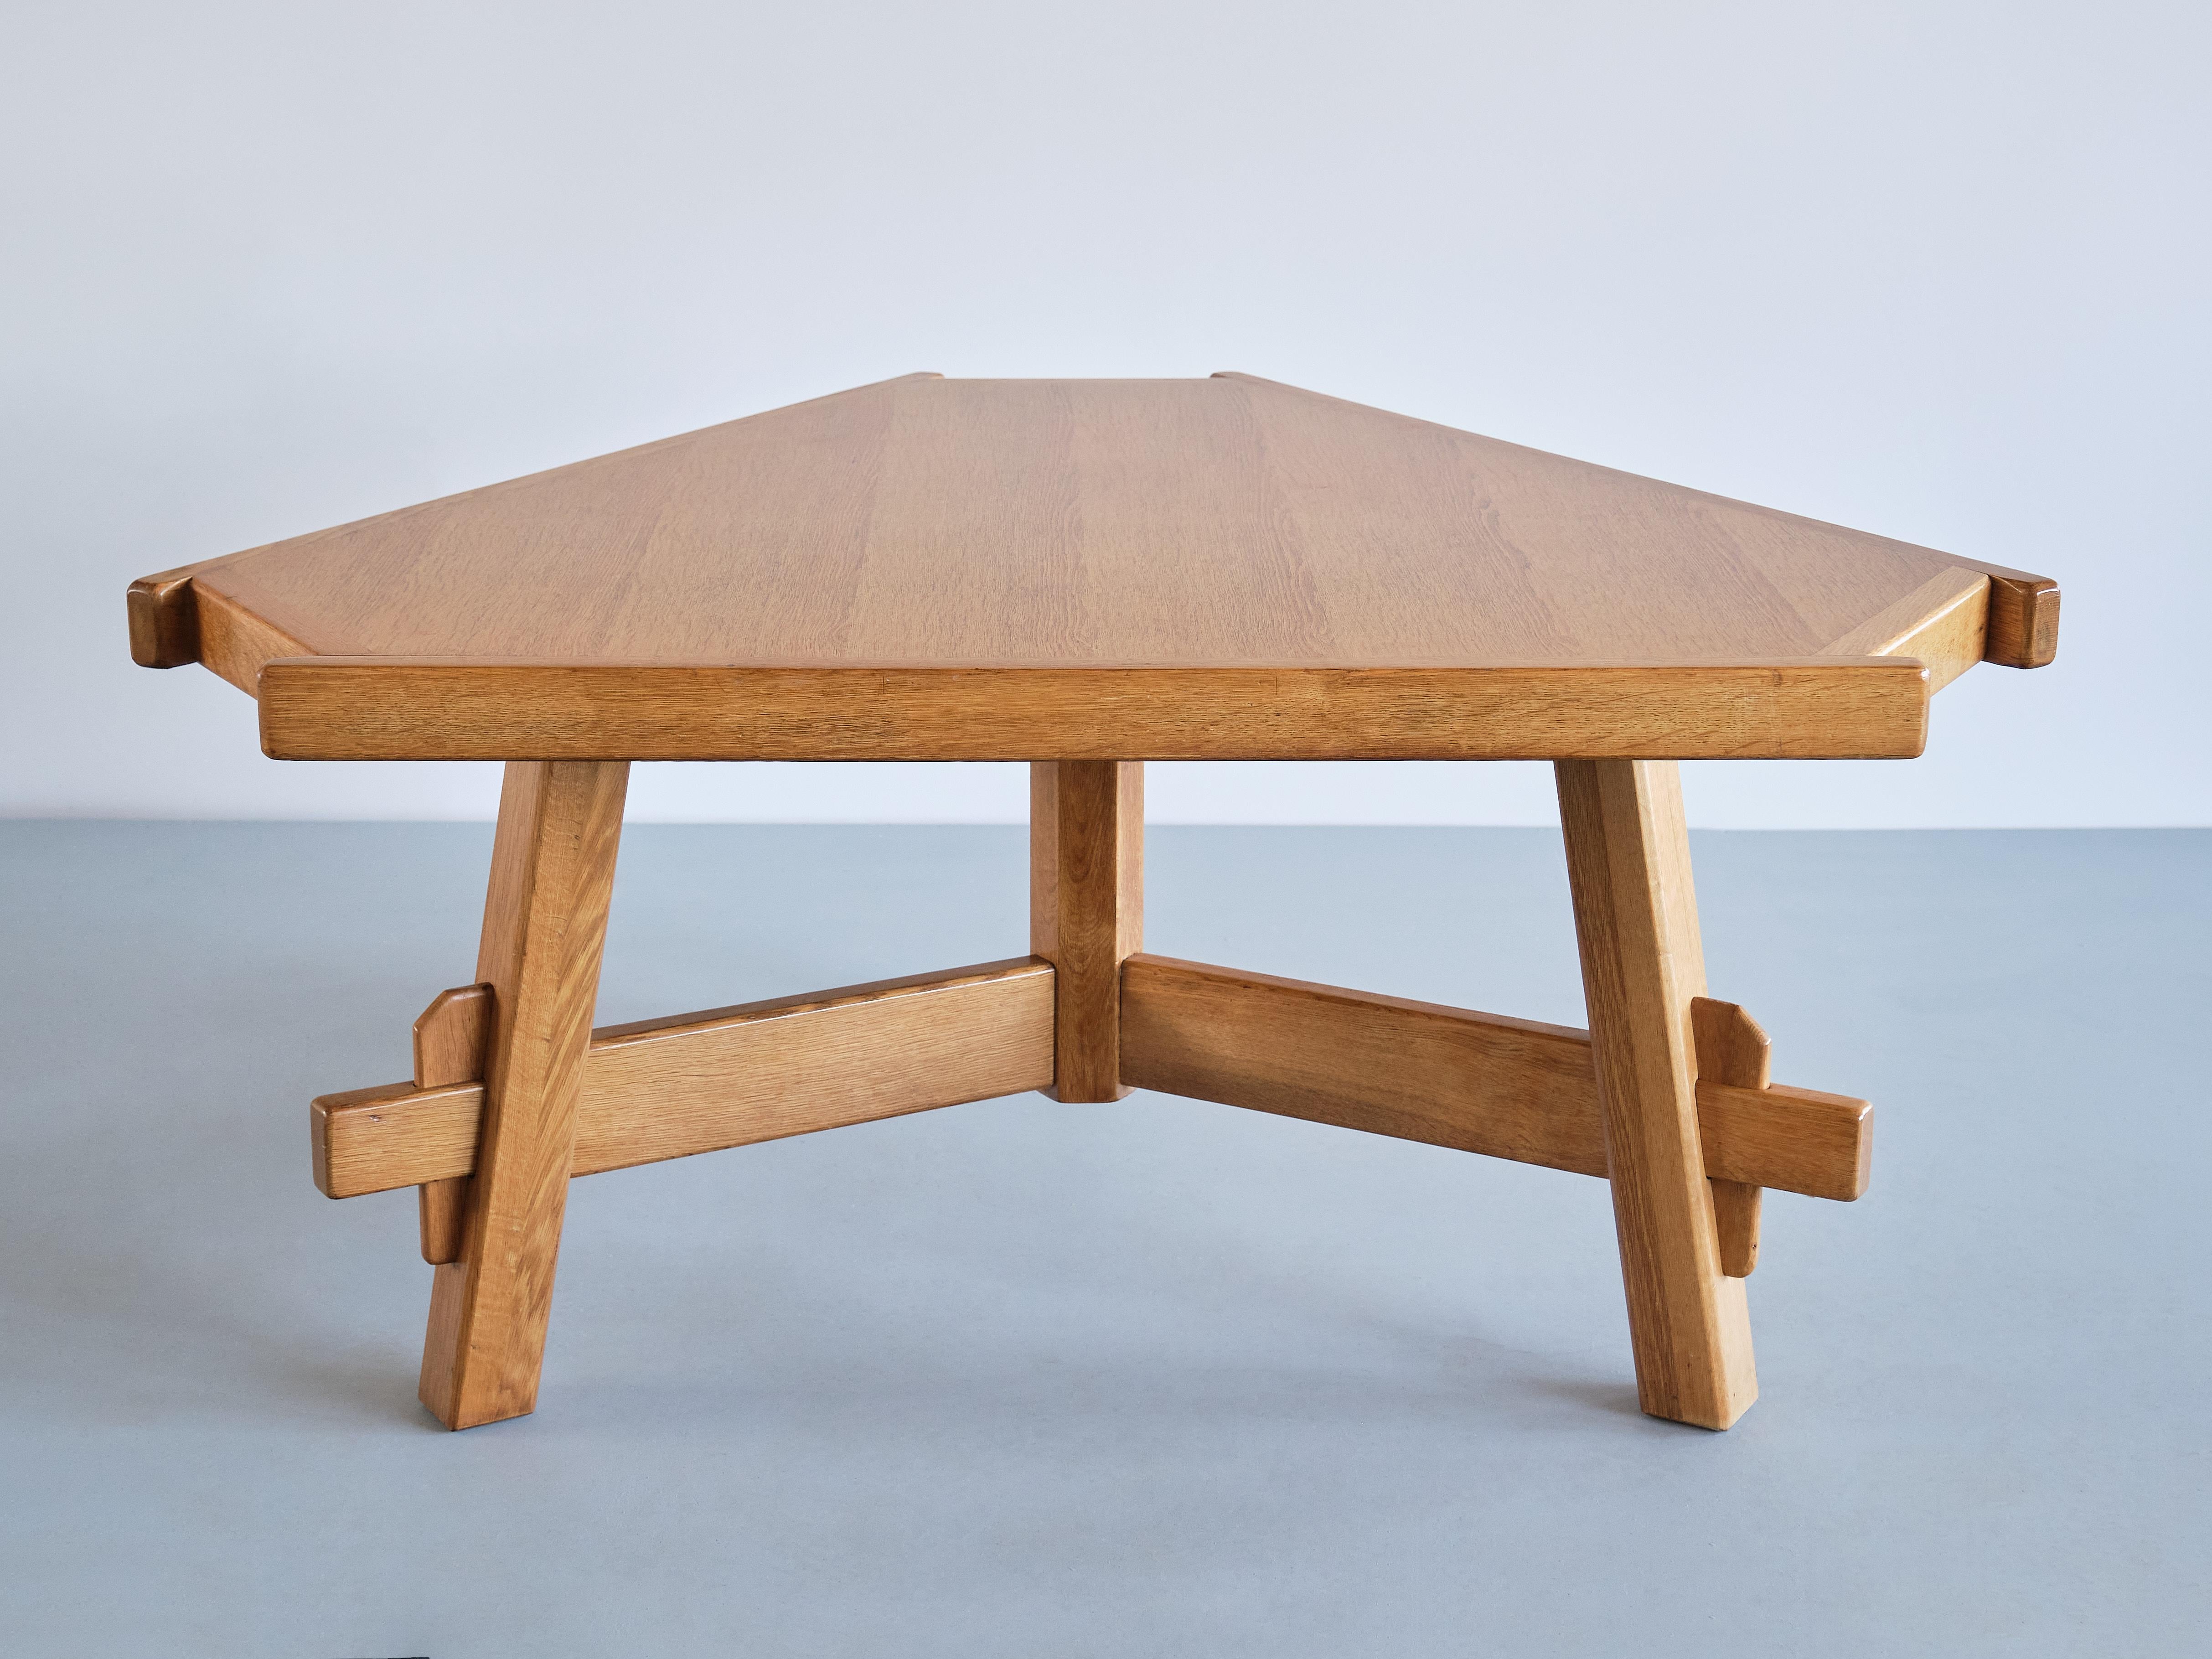 Cette rare table de salle à manger géométrique a été produite en France dans les années 1960. Le design saisissant est marqué par la forme triangulaire du plateau et du cadre. La table est entièrement réalisée en chêne blond massif. Le plateau